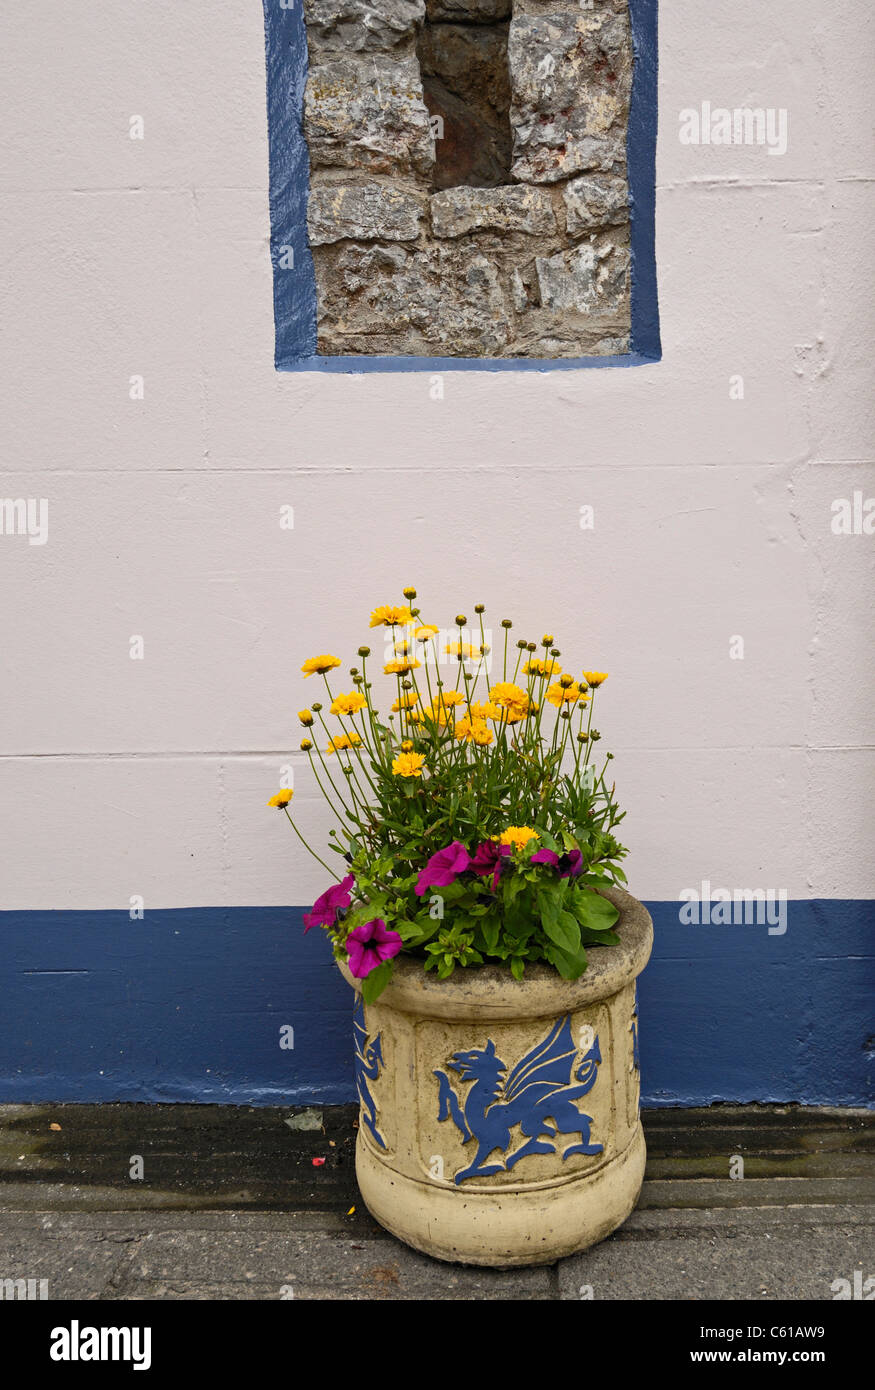 Pote De la flor de color crema con un grabado de un dragón azul y amarillo/rojo flores plantadas. Foto de stock